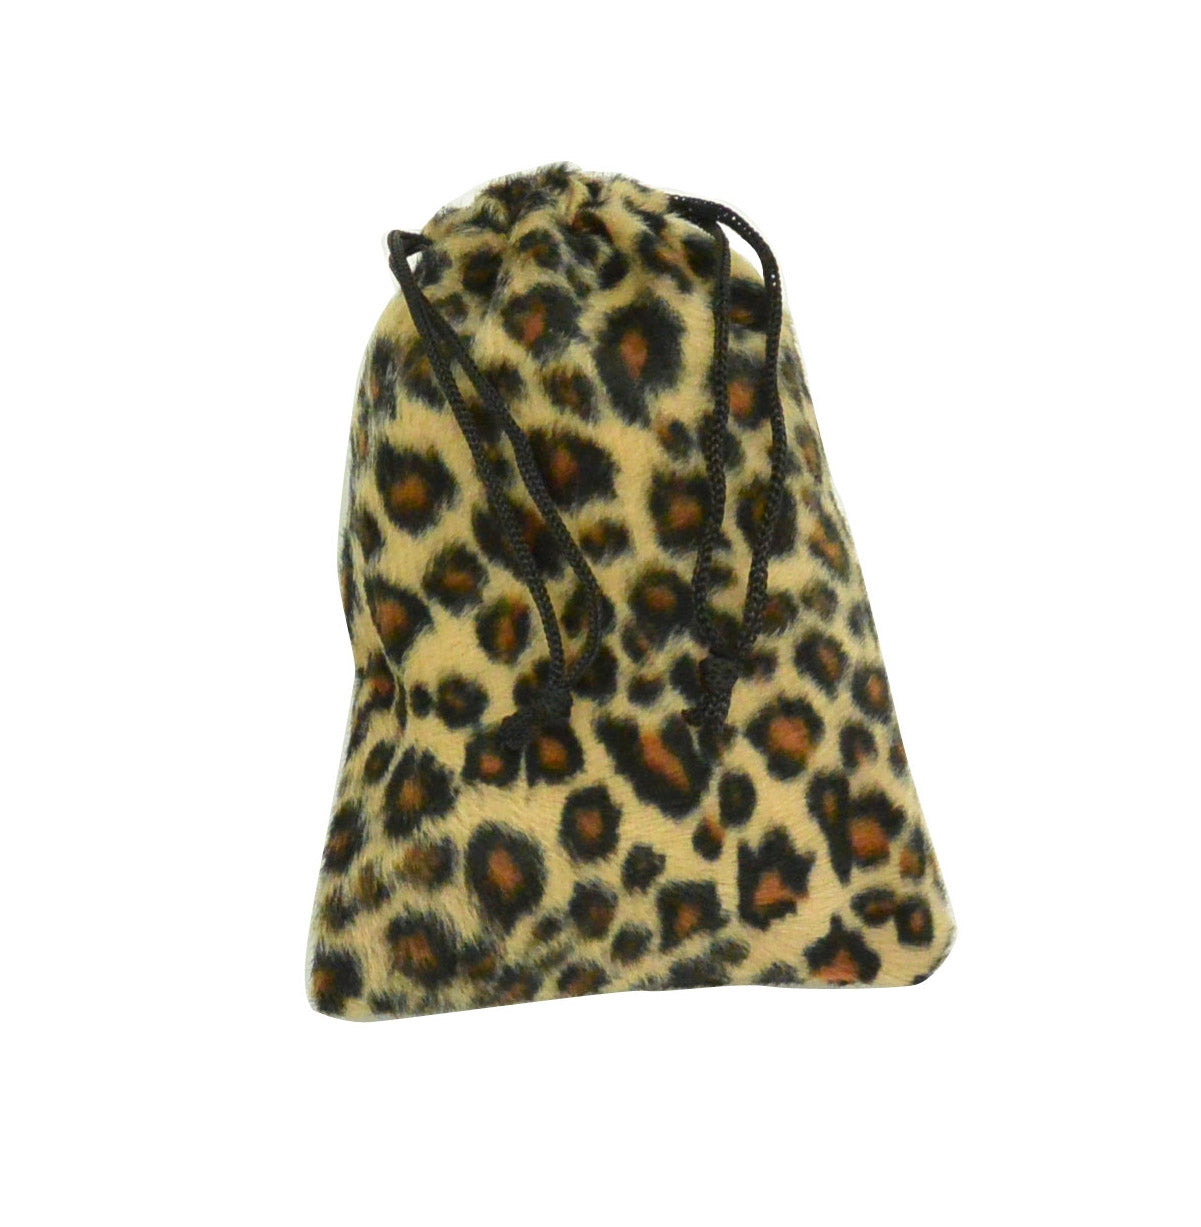 Large Jaguar High Quality Velvet Pouch Bags Party Favors